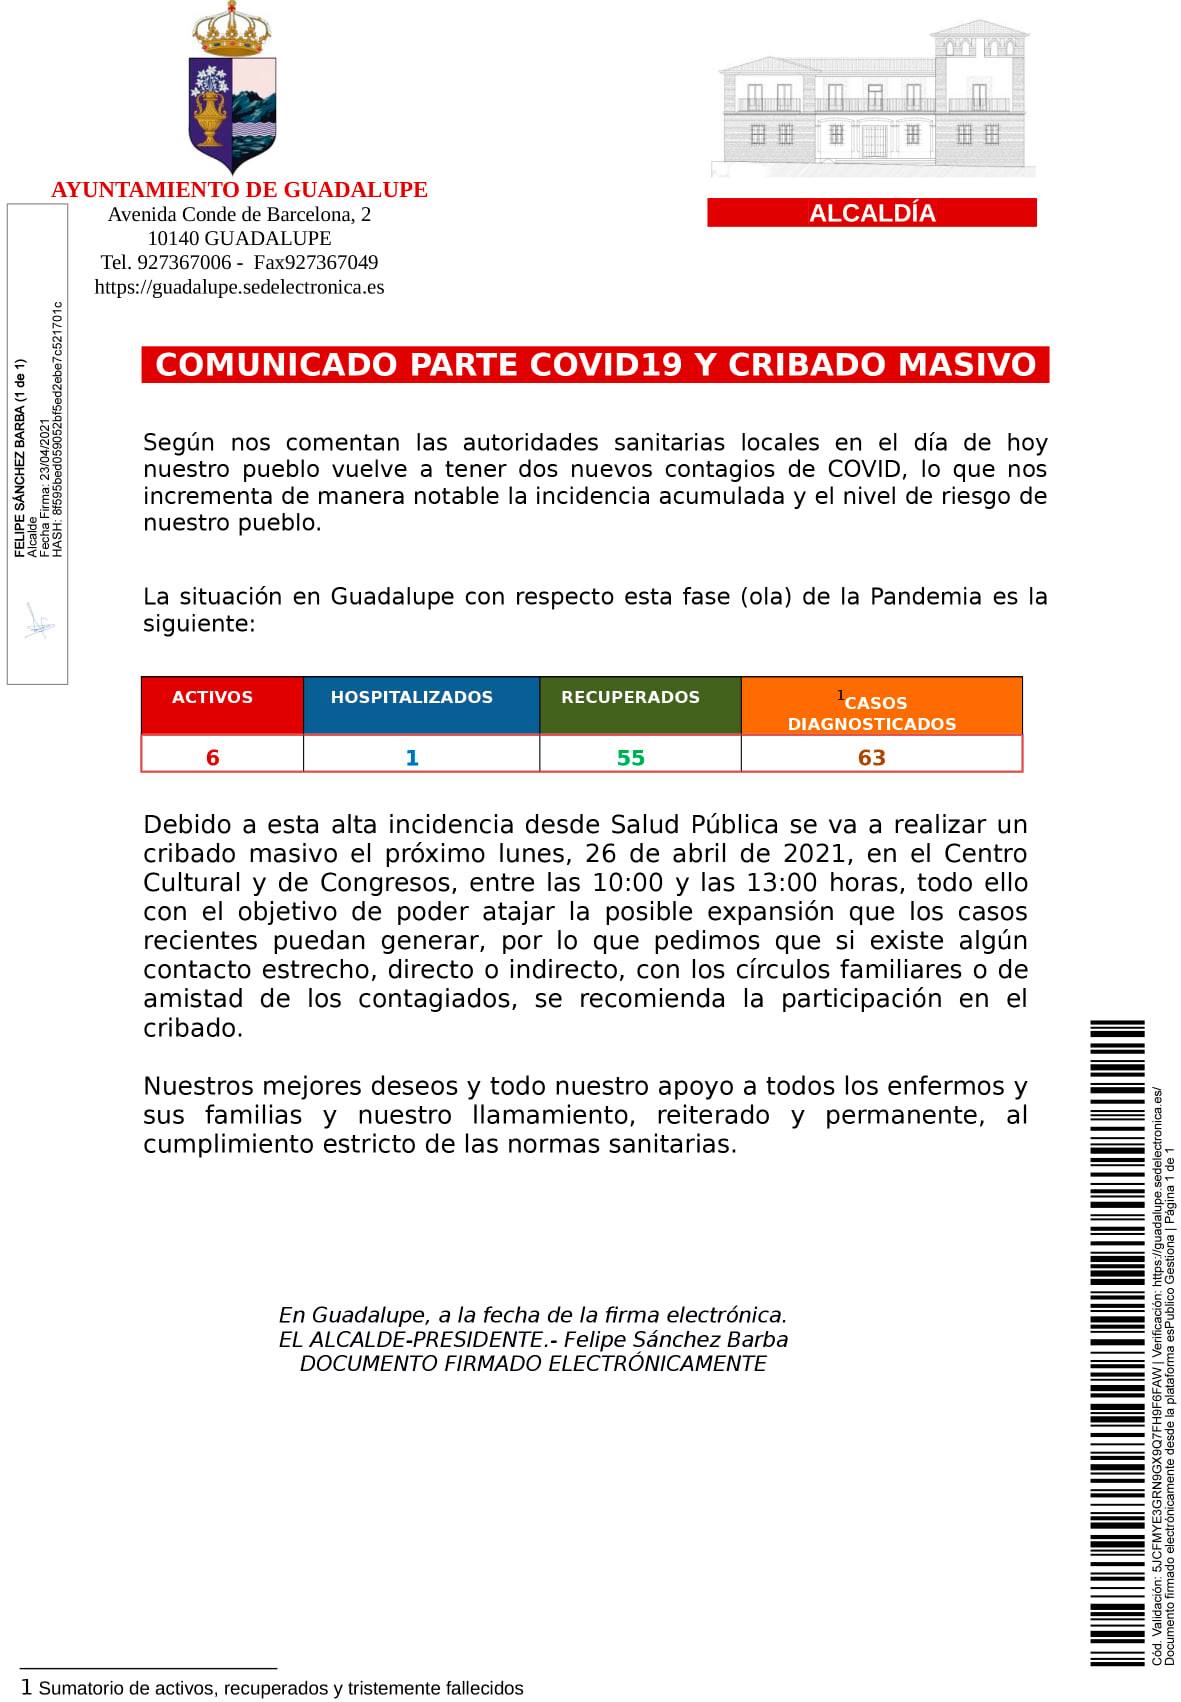 6 casos positivos activos de COVID-19 (abril 2021) - Guadalupe (Cáceres)